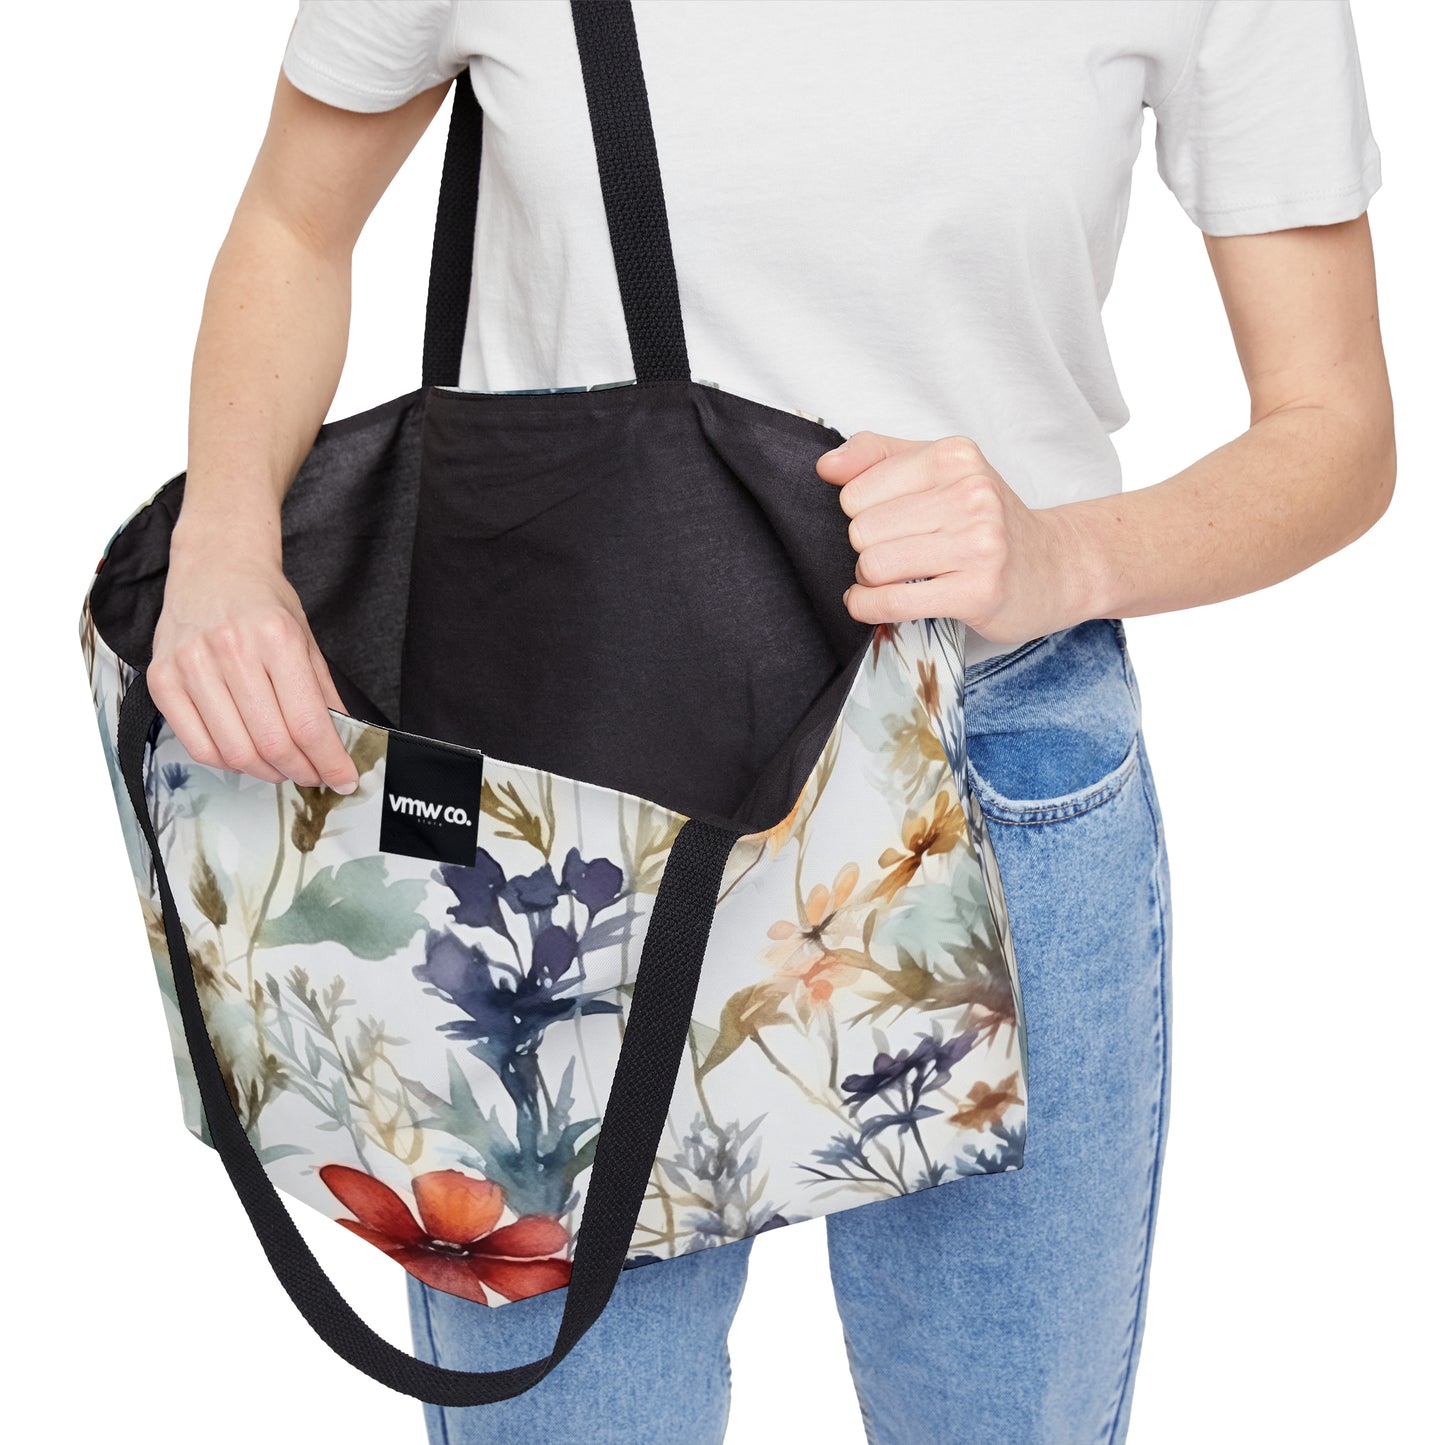 Ethereal Bloom Weekender Tote Bag